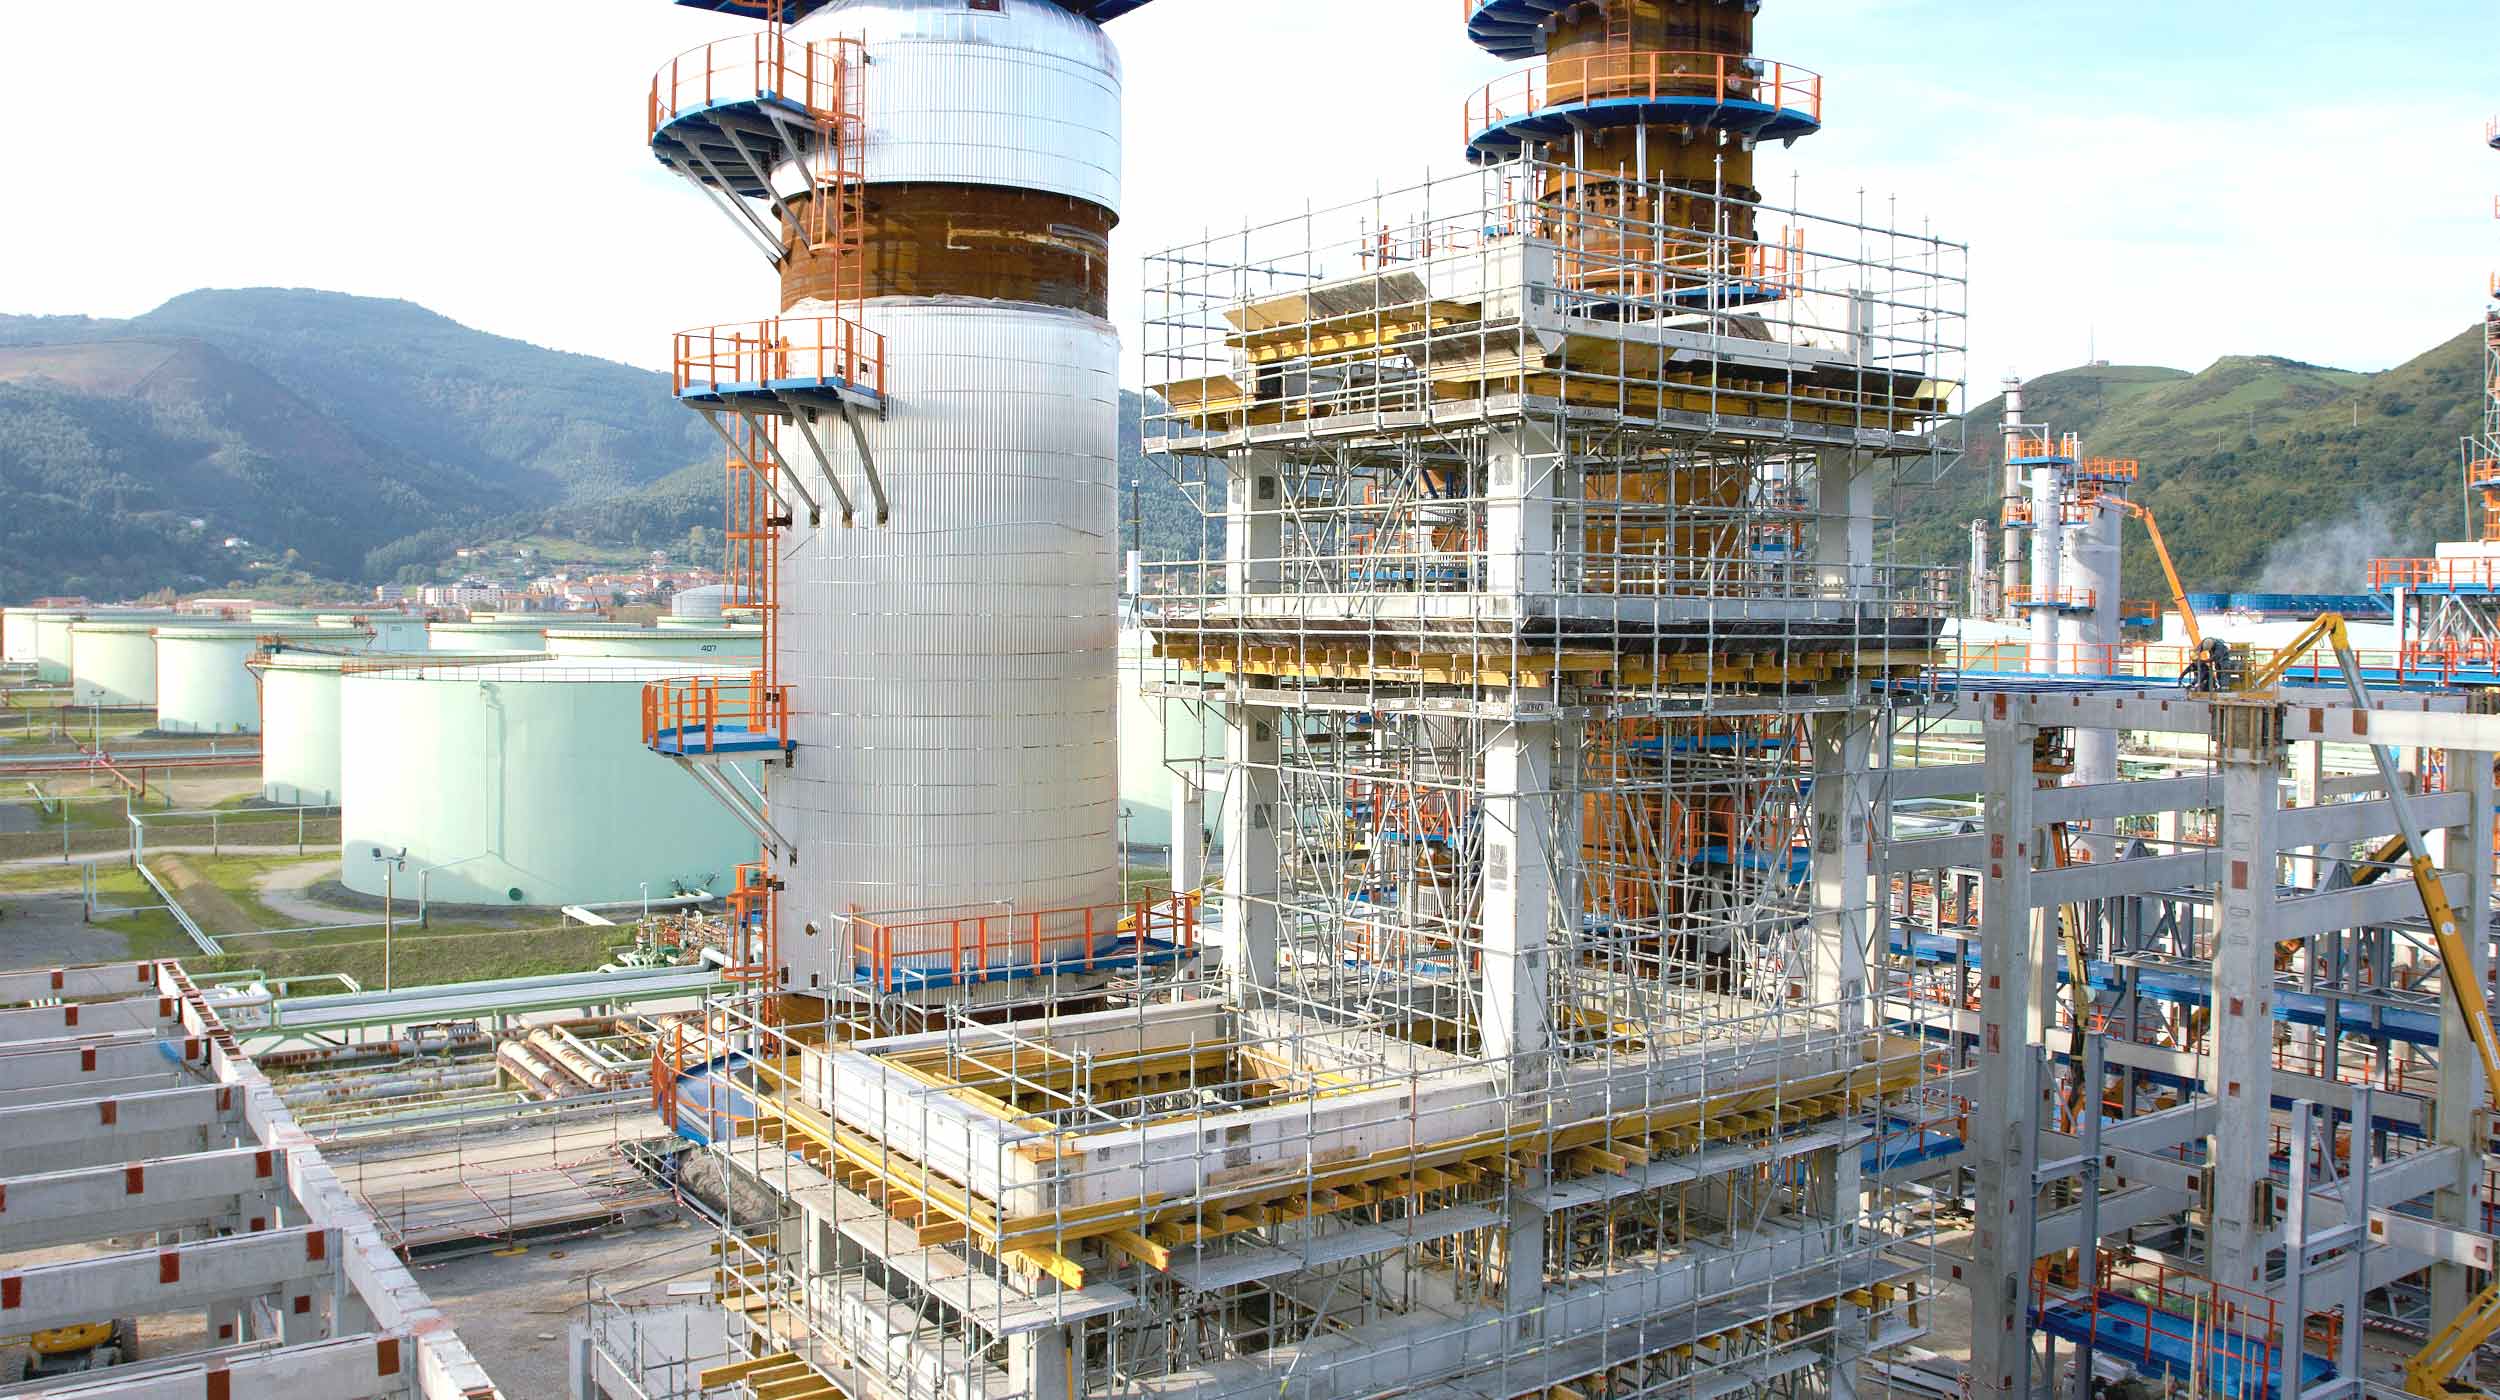 La refinería de Petronor, con más de 40 años de actividad, es la planta con mayor capacidad de la Península y una de las más importantes de Europa.